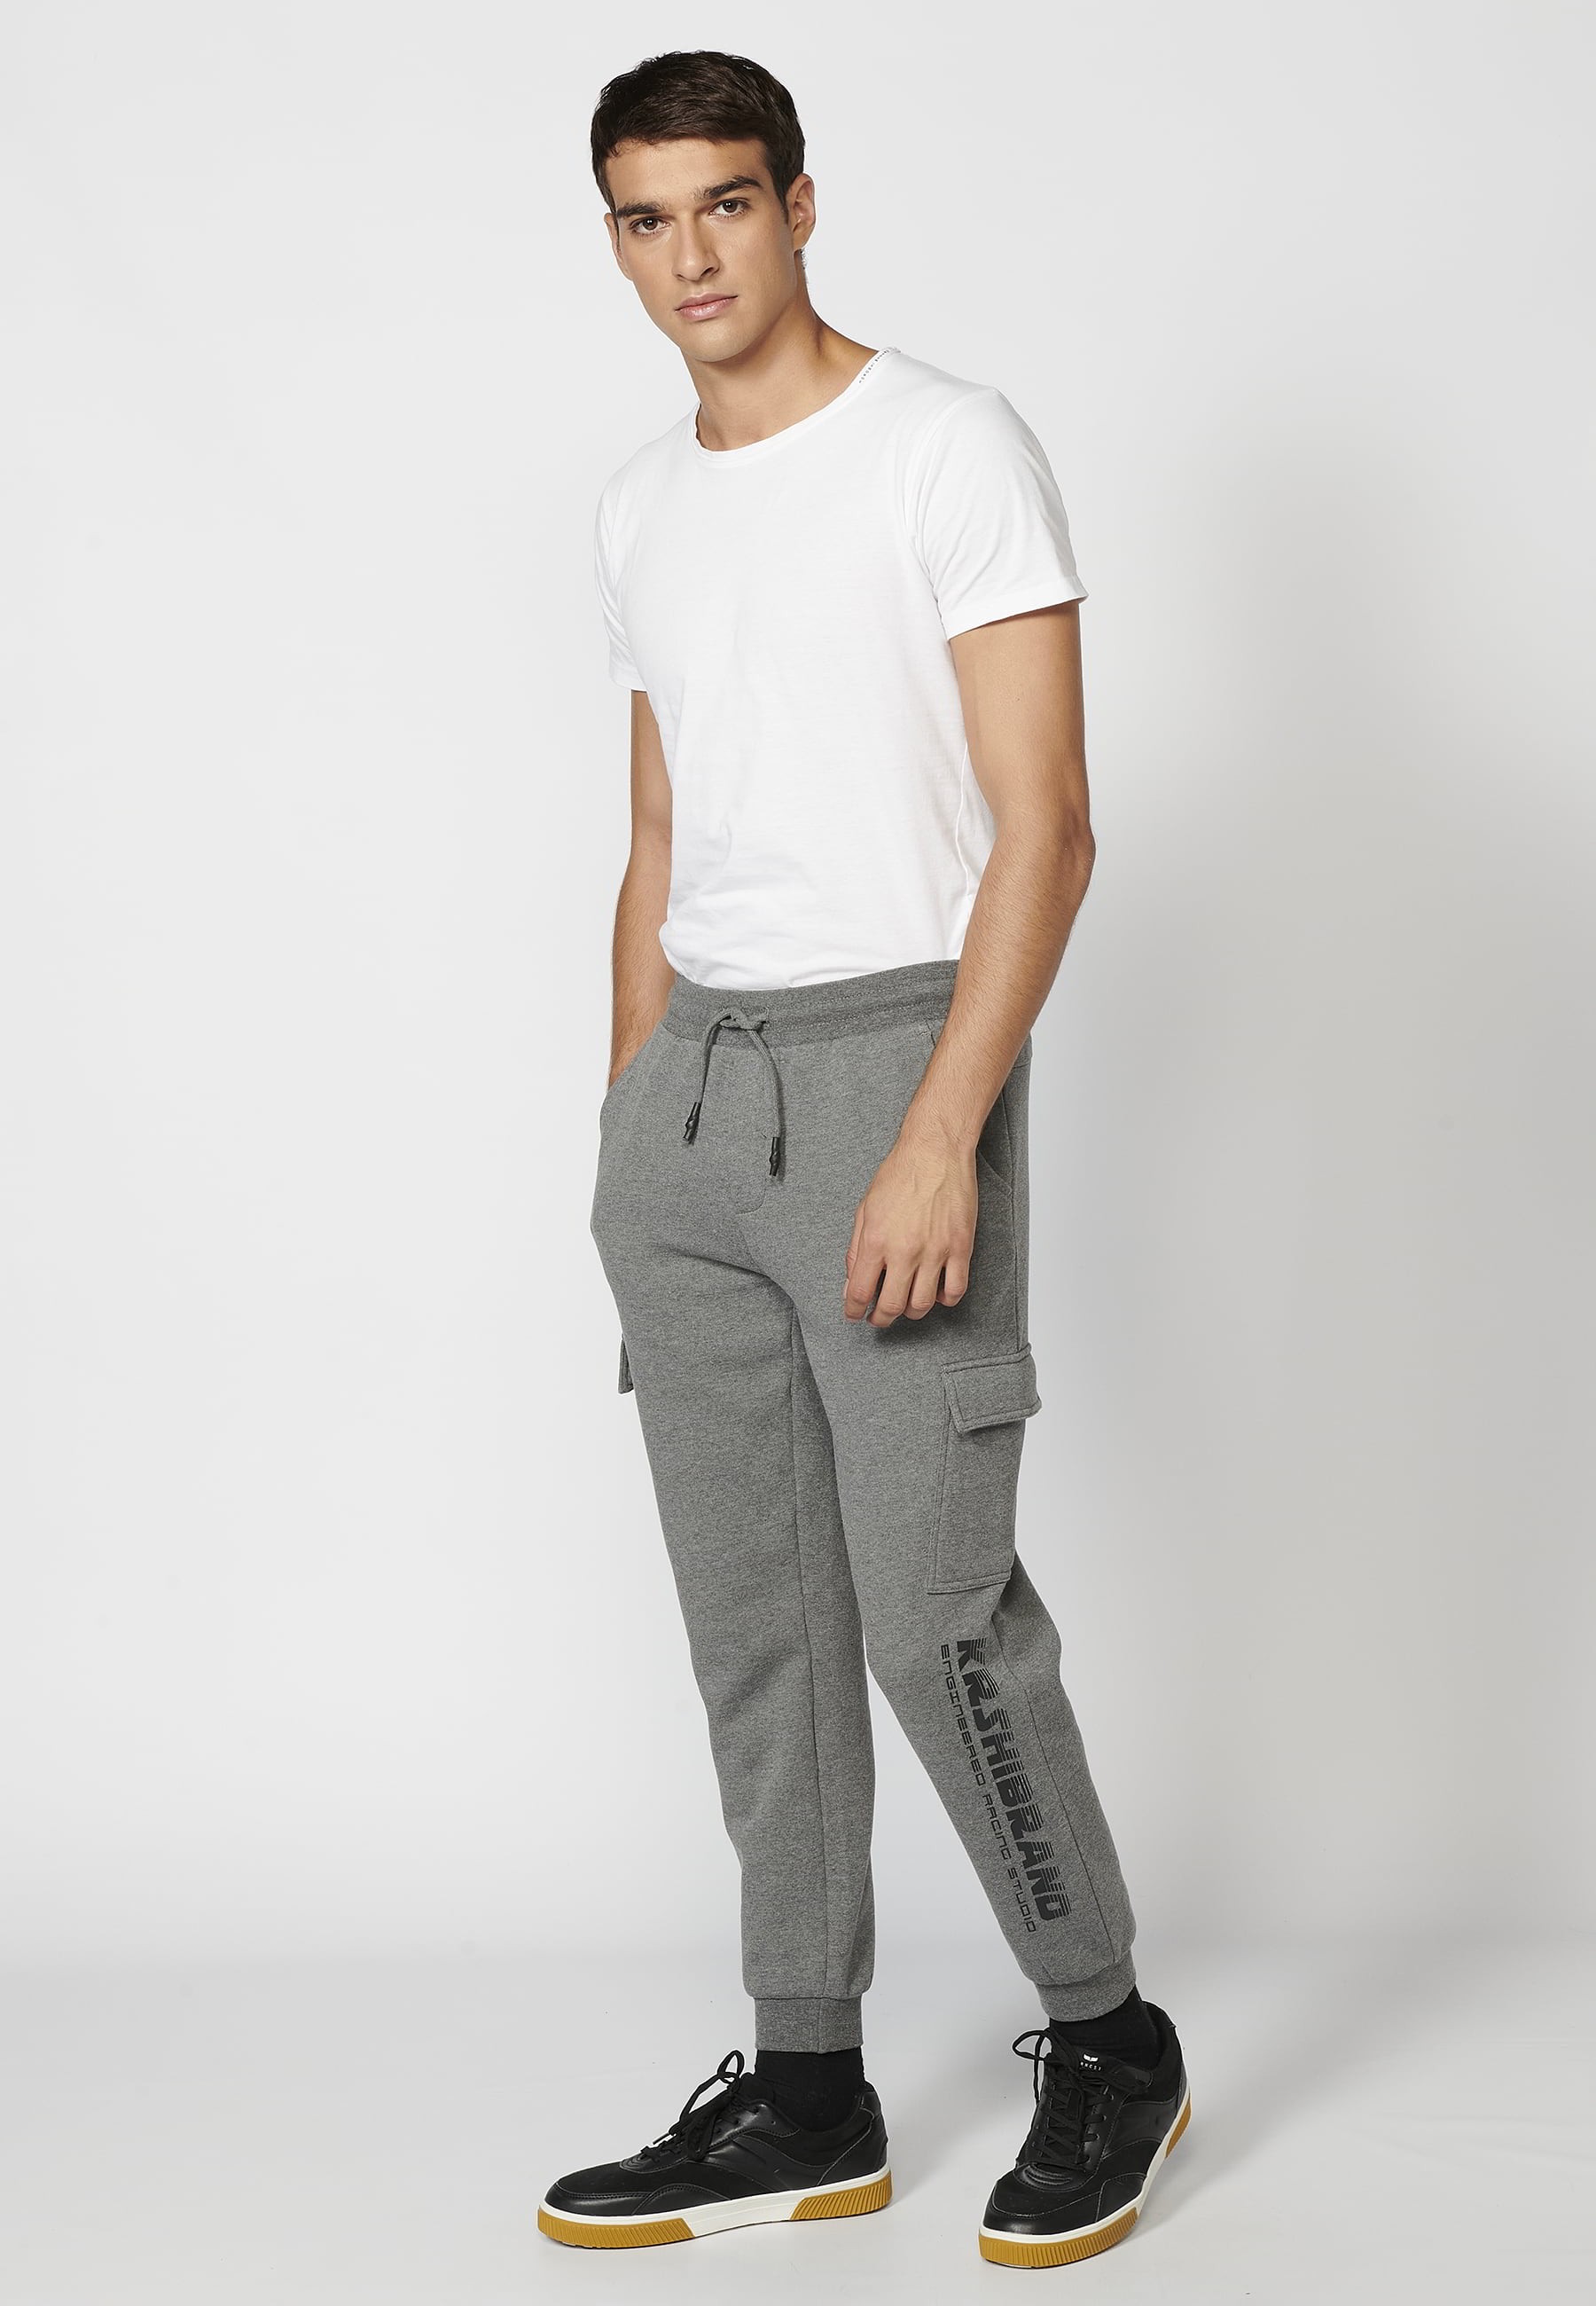 Lange Jogginghose mit verstellbarem elastischem Bund, Cargotasche, graue Farbe für Herren